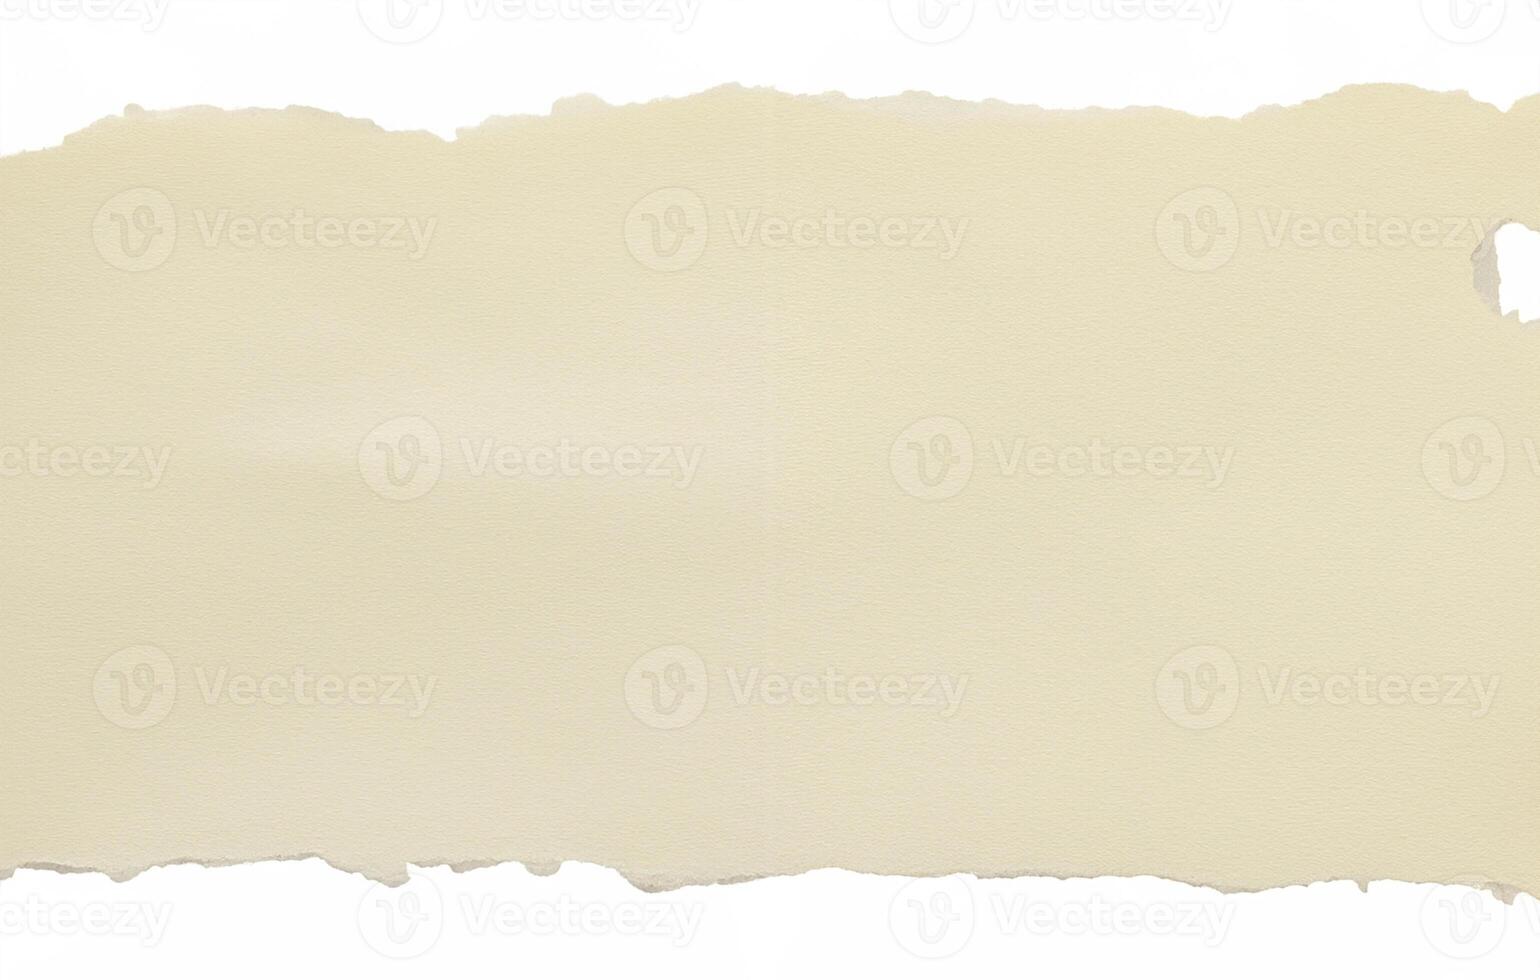 tom brun trasig notera papper isolerat på vit bakgrund foto